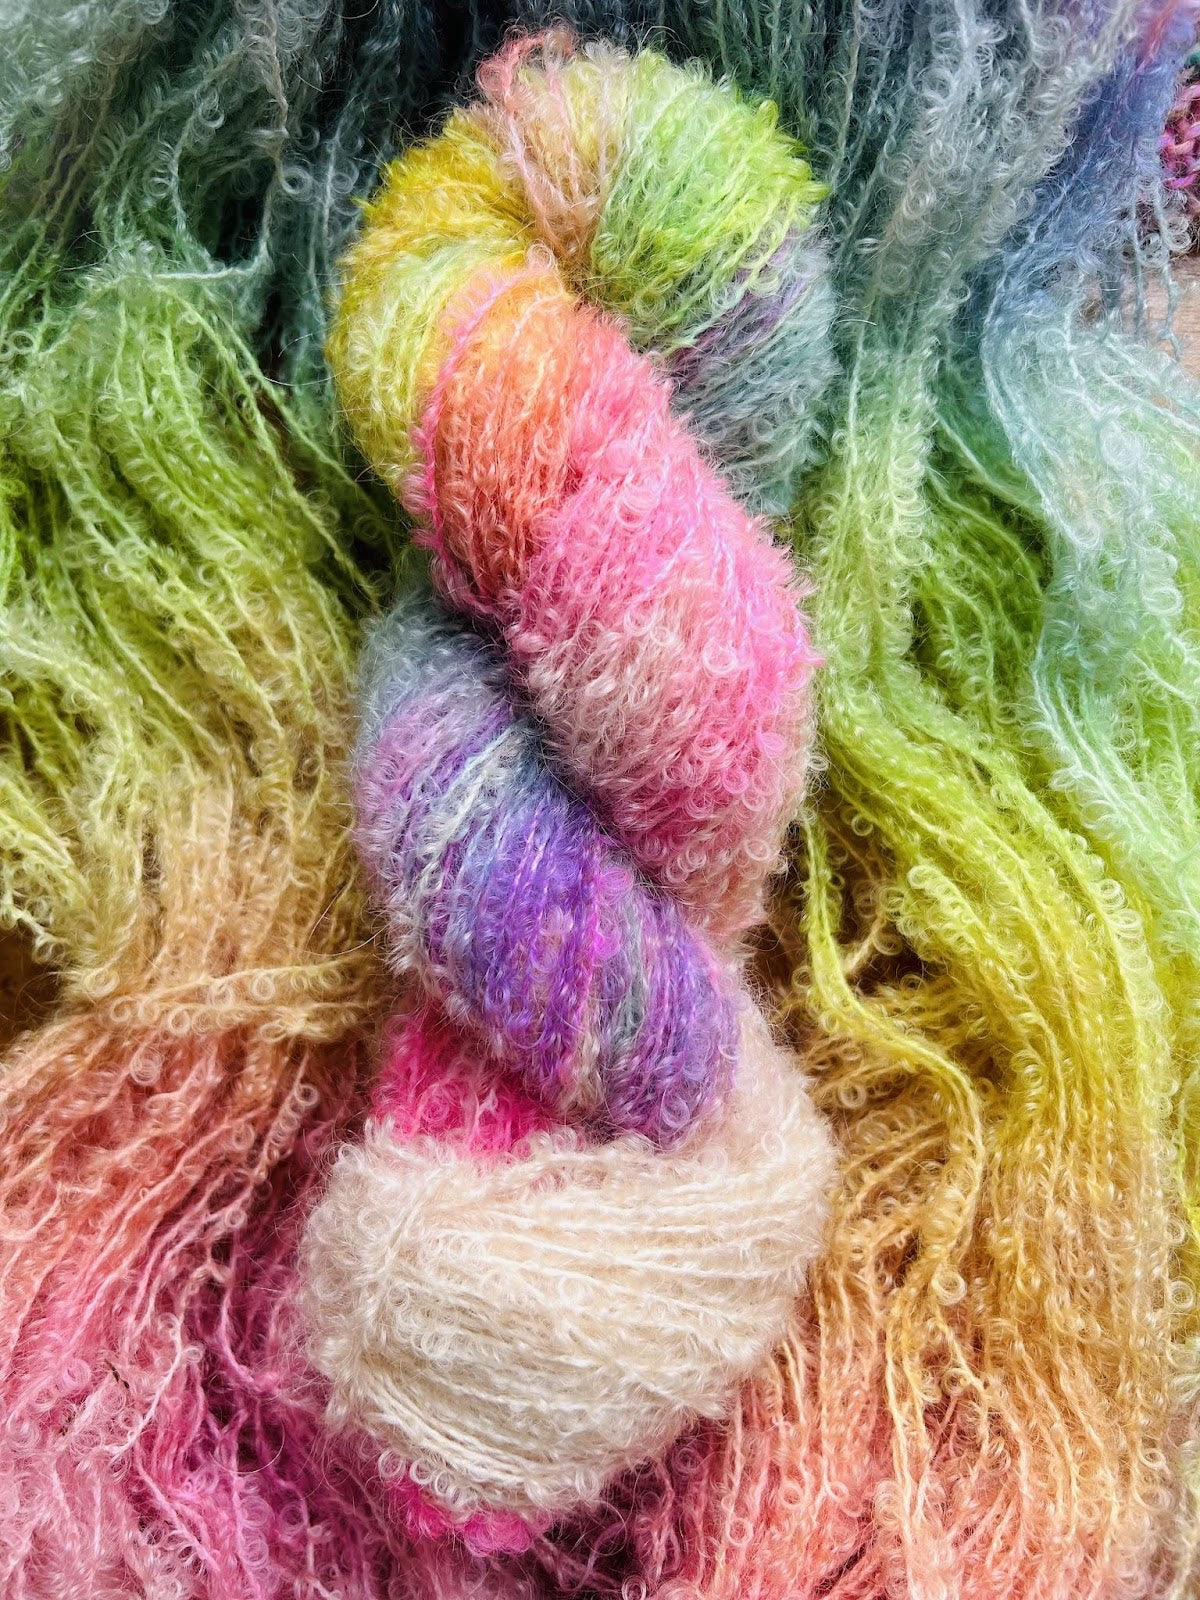 yarn dyeing tutorial 